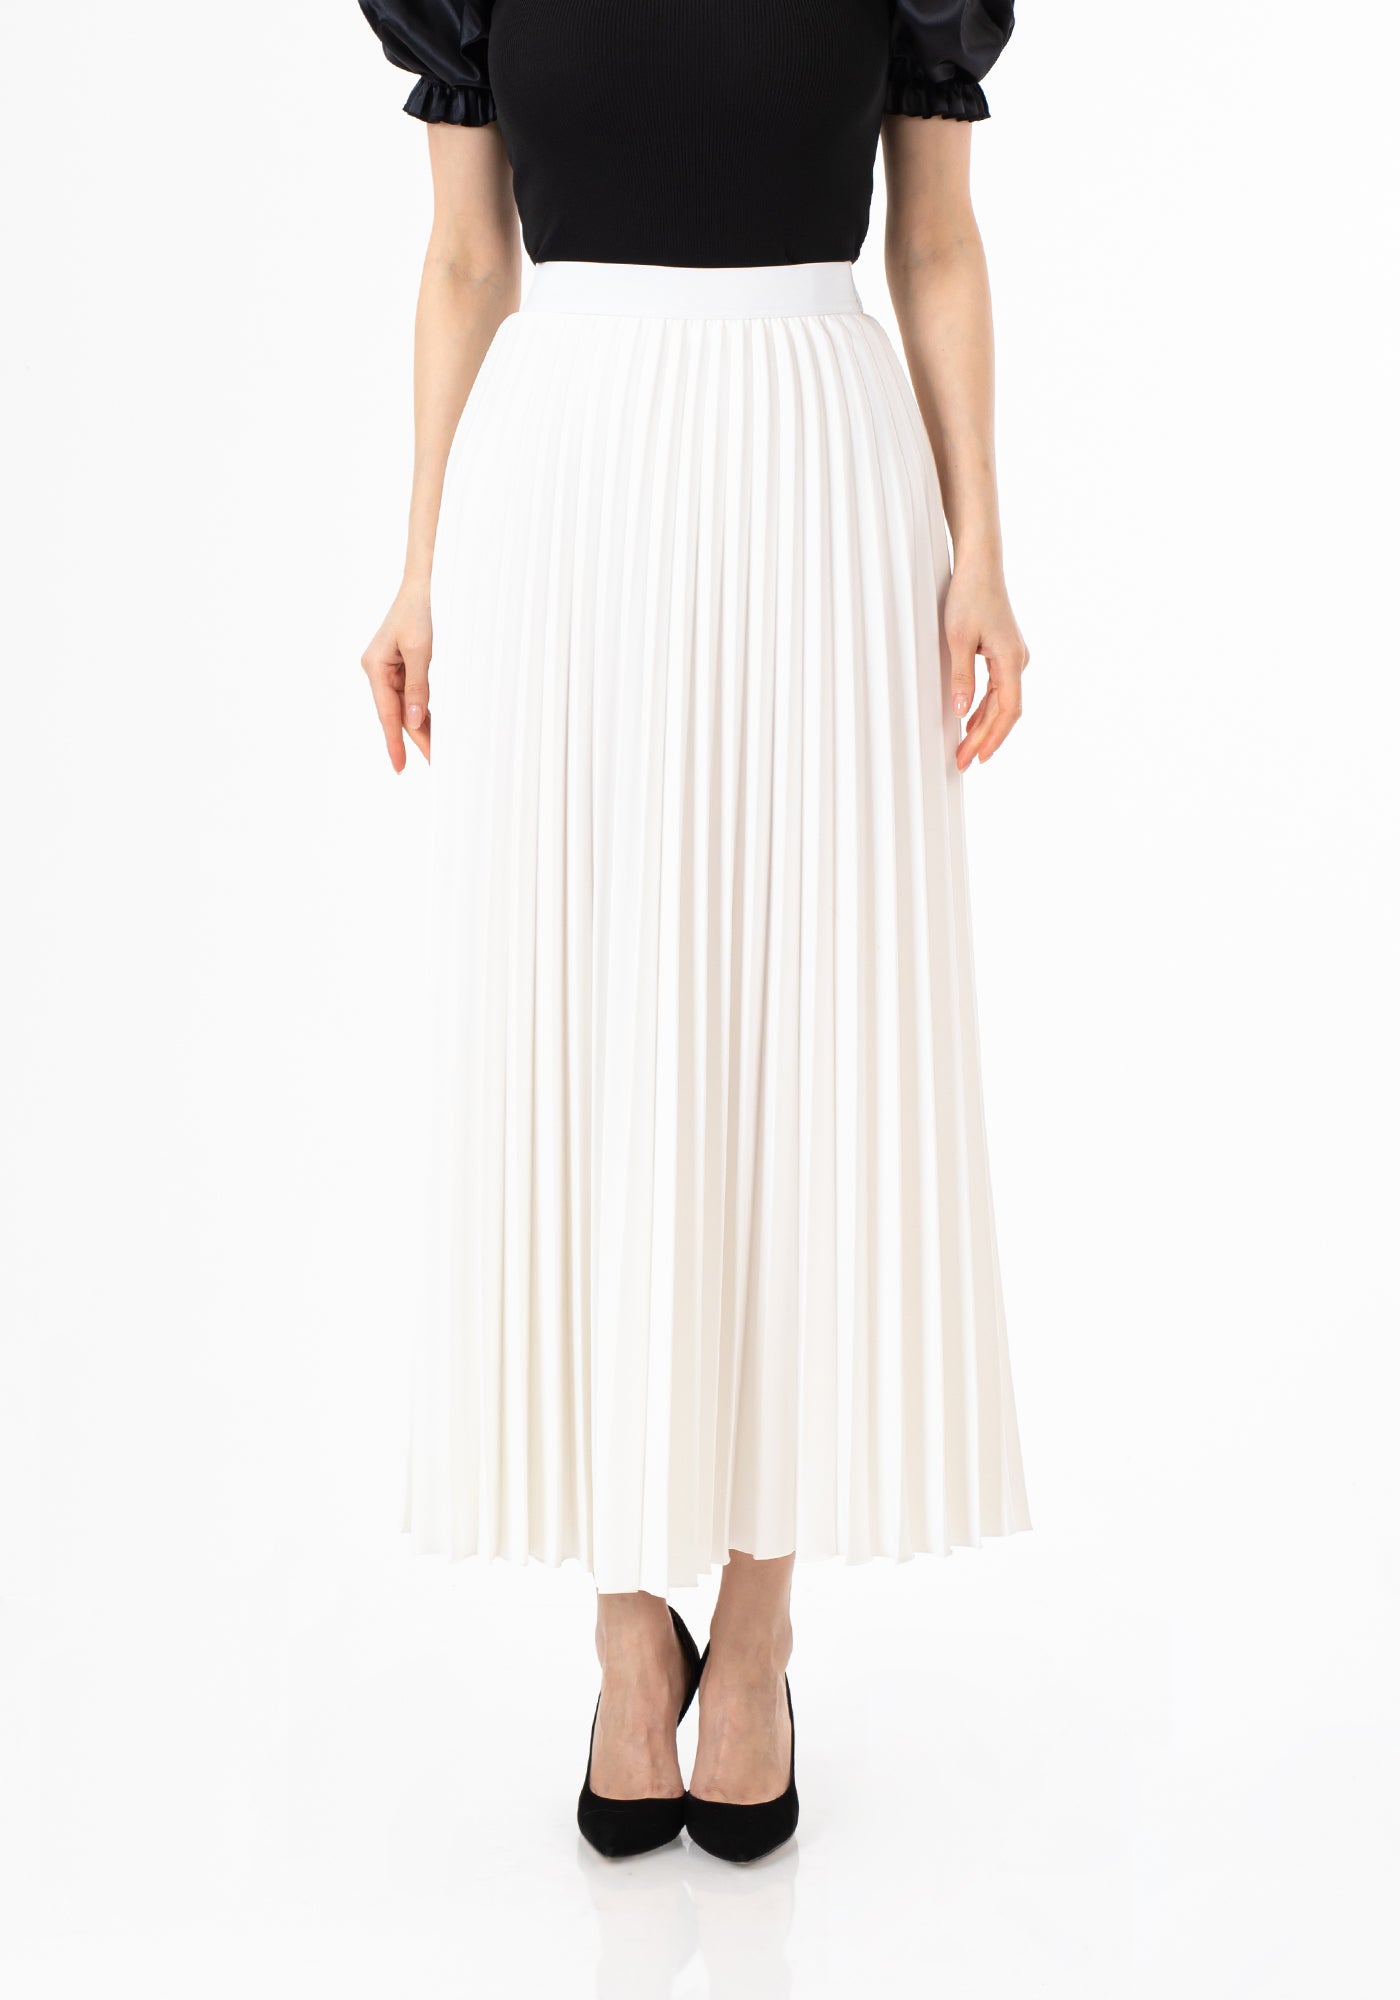 White Pleated Maxi Skirt Elastic Waist Band Ankle Length Plisse Skirt G-Line